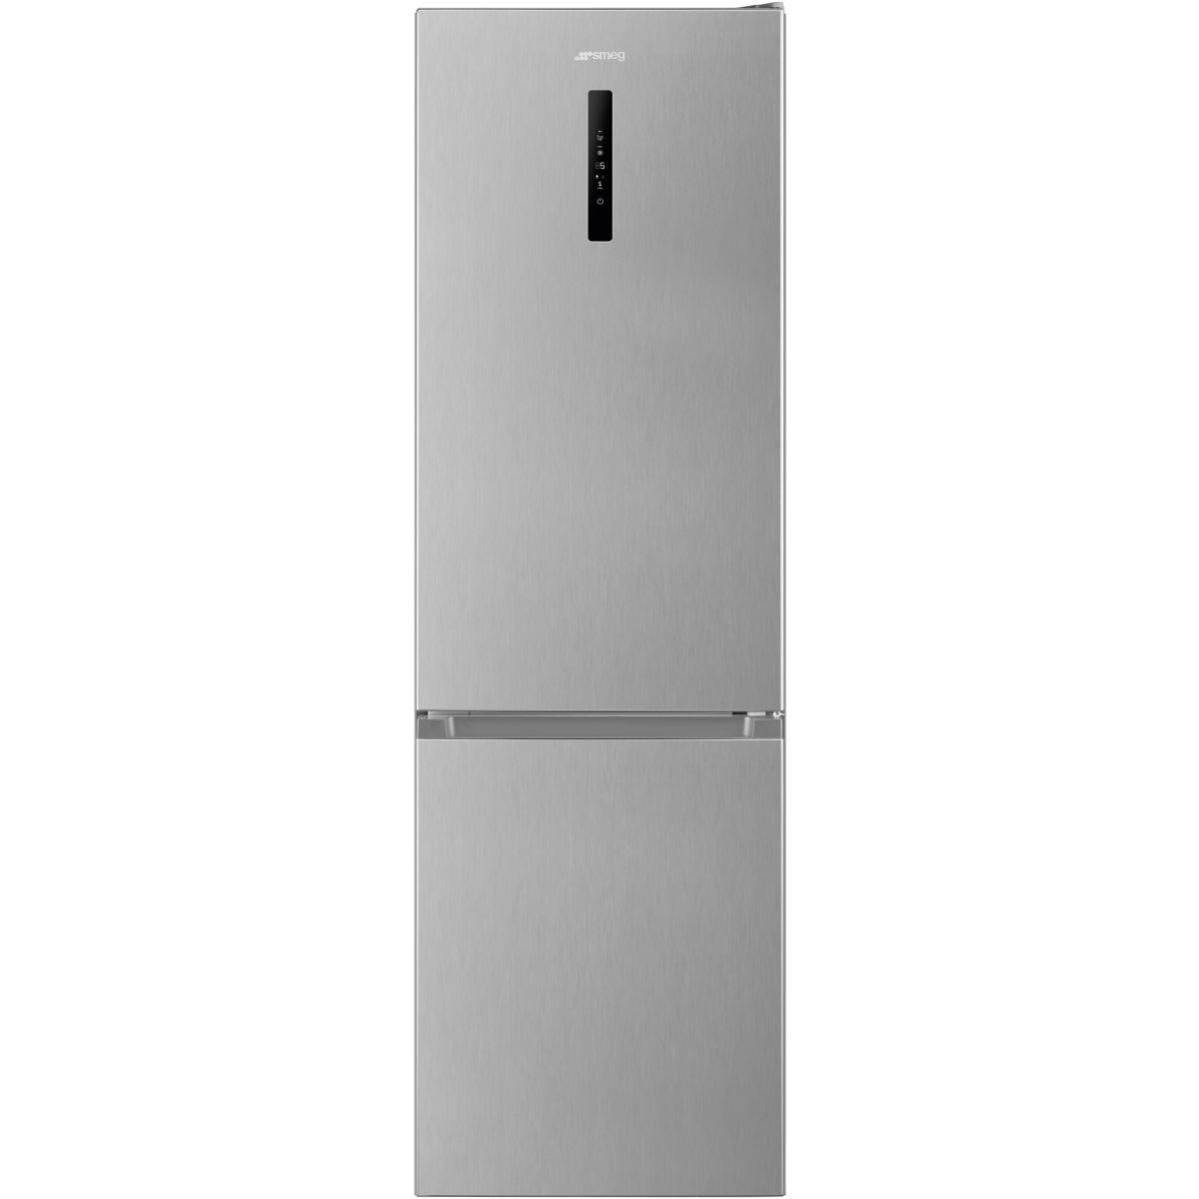 Refrigerateur 58 cm largeur - Comparez les prix et achetez sur